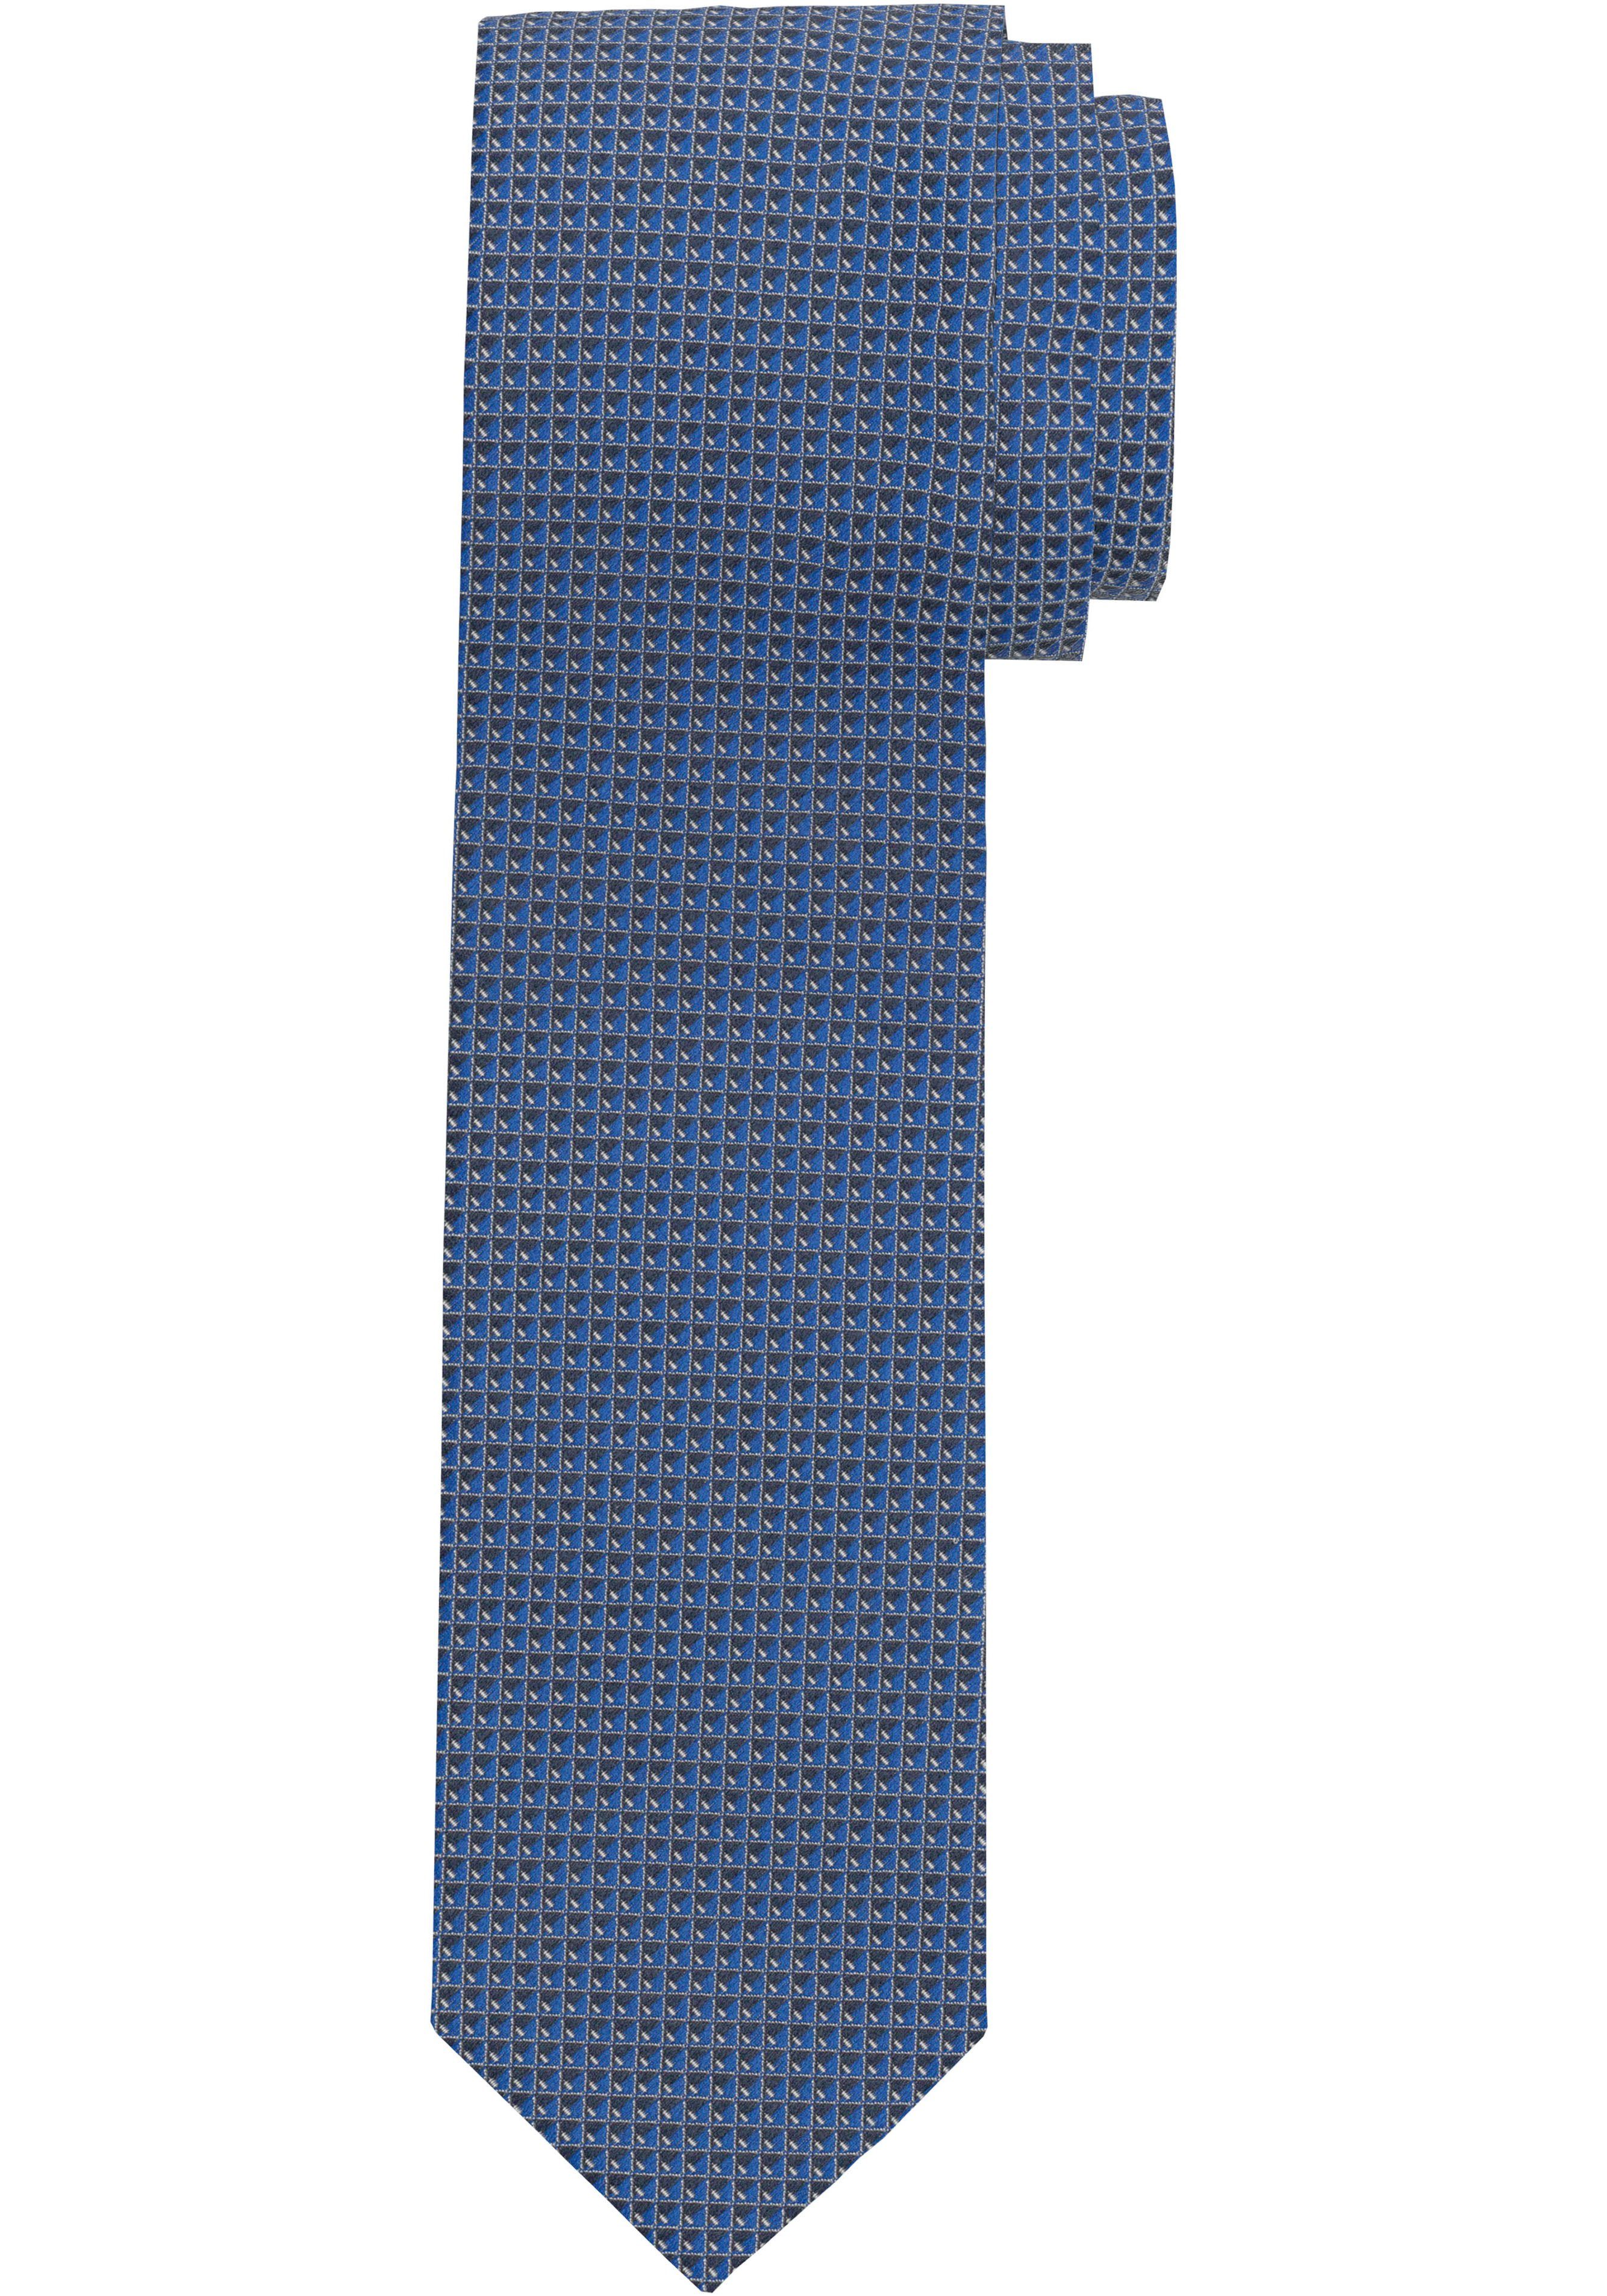 OLYMP Krawatte Strukturierte Krawatte, Wirksamer Schutz gegen Schmutz und  Flecken durch fleckabweisende Veredelung | Breite Krawatten